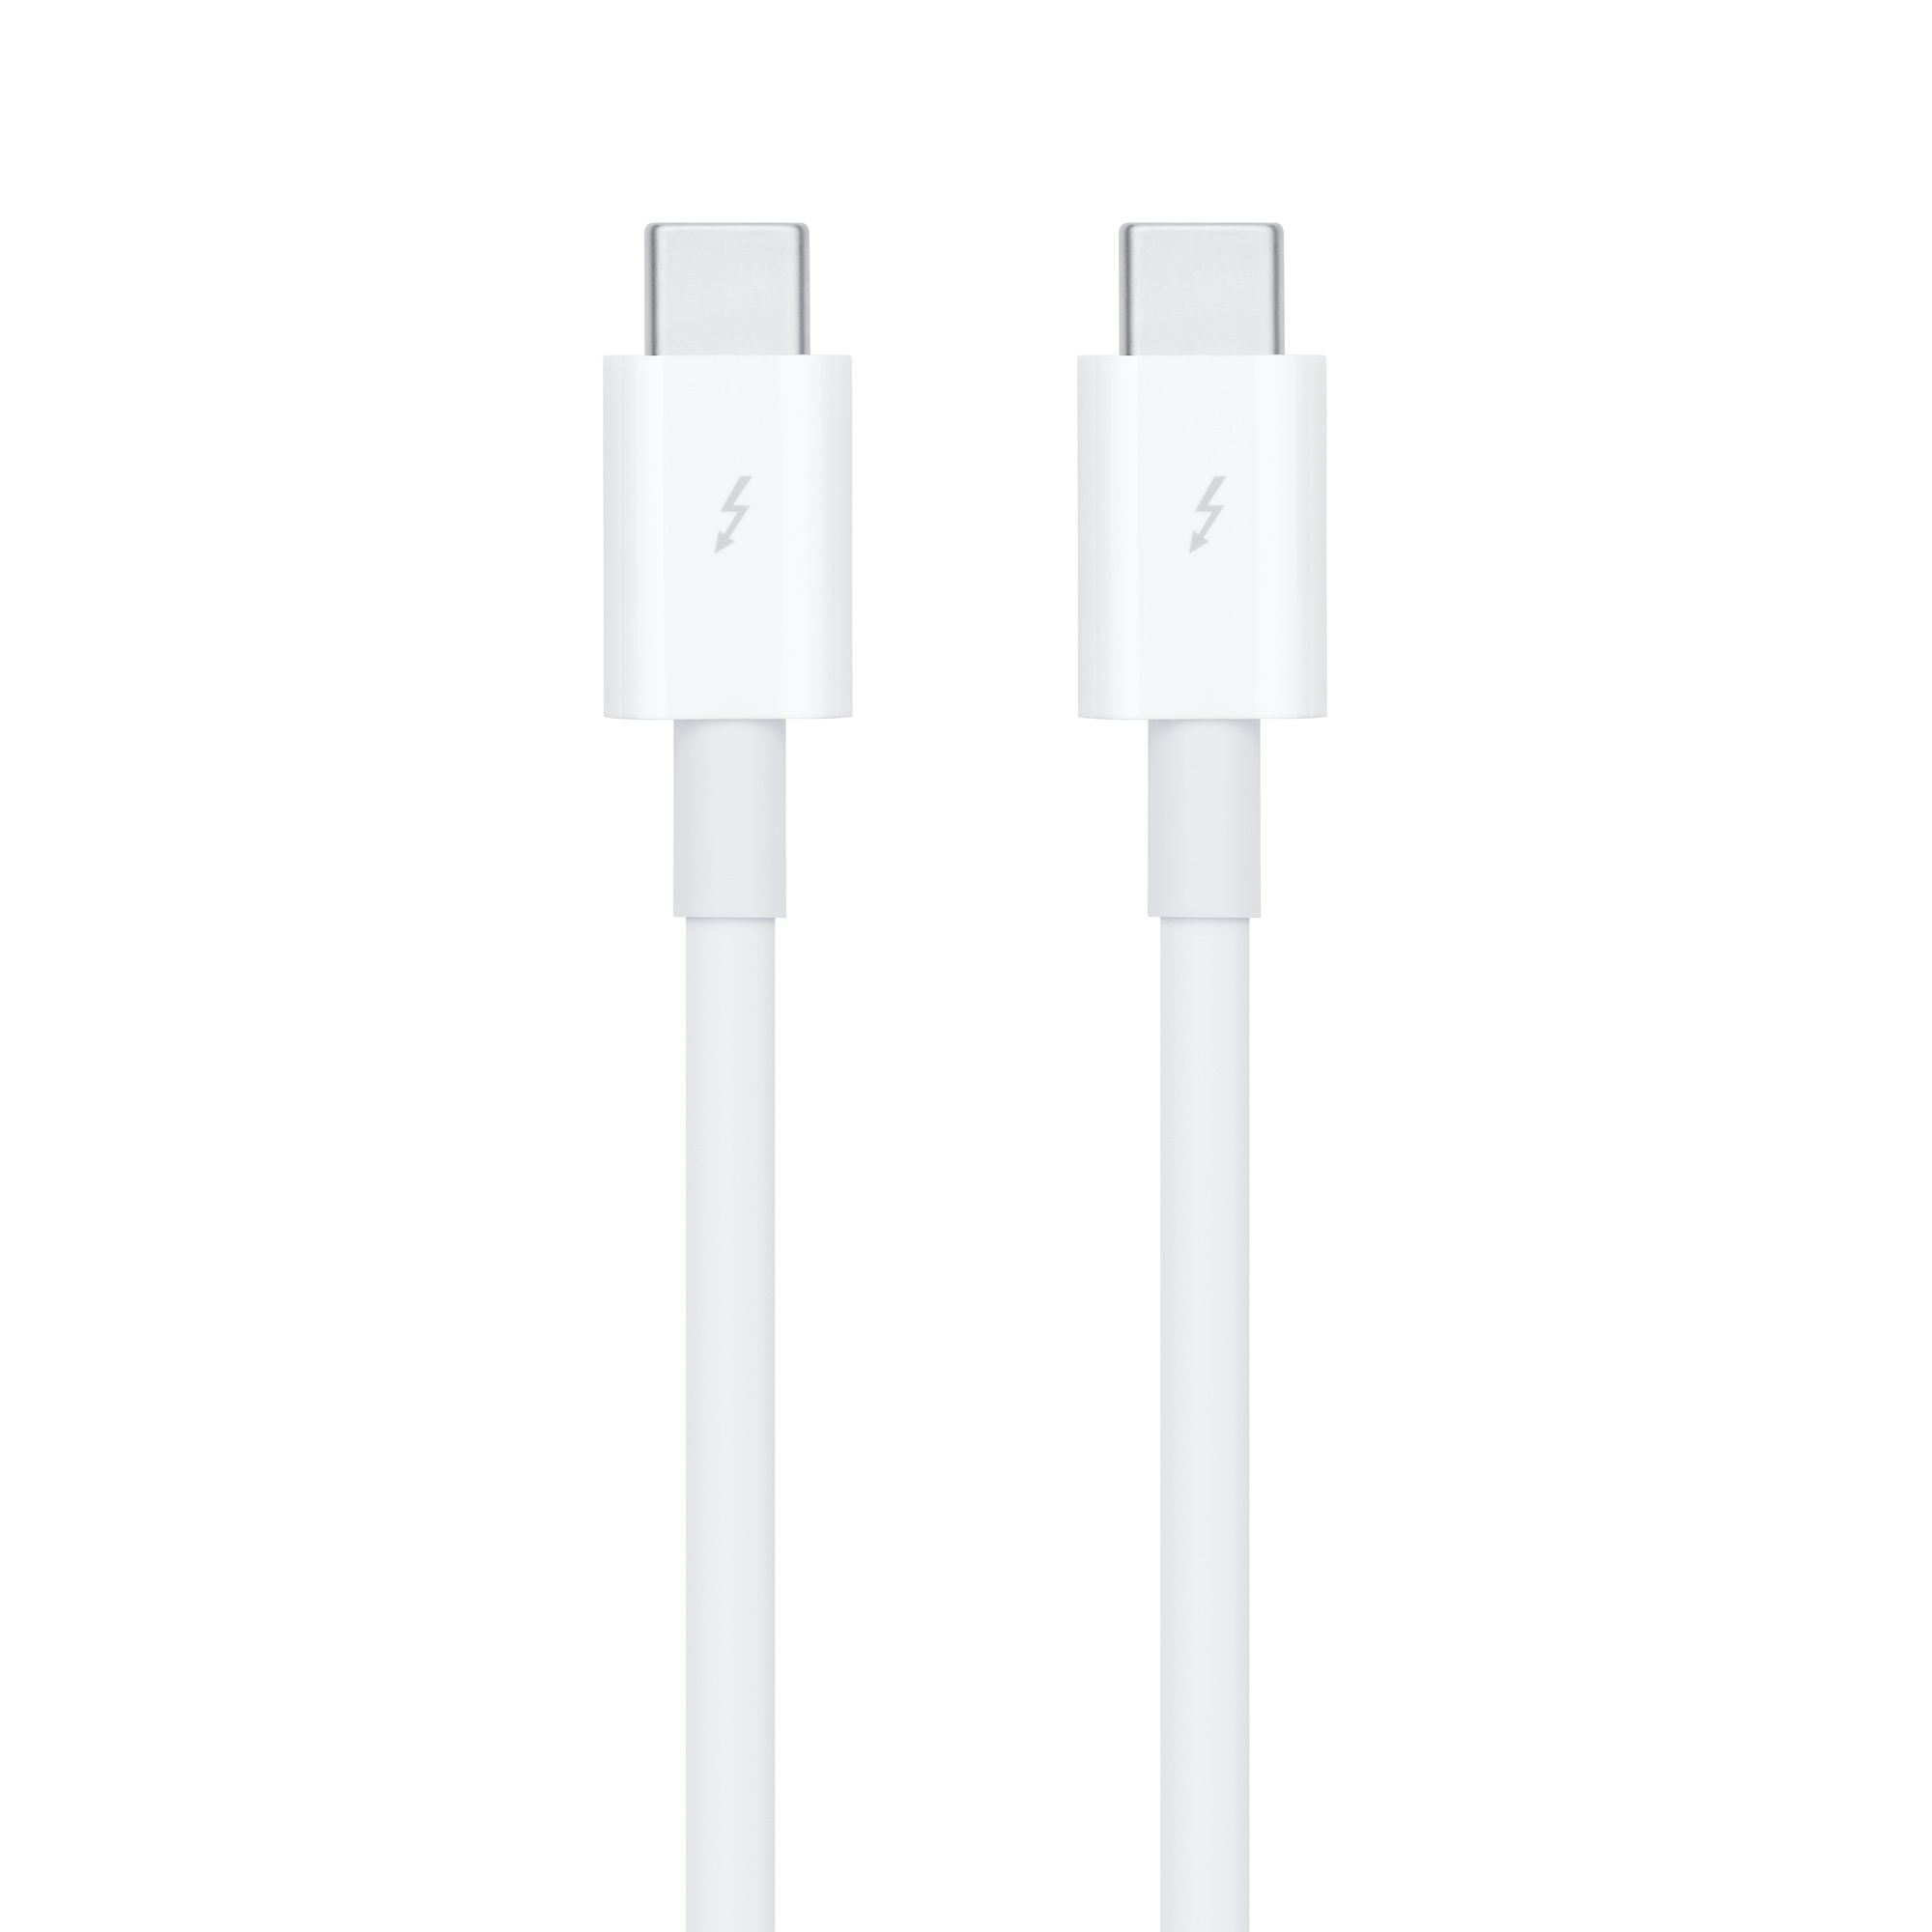  Cáp Apple Thunderbolt 3 (USB‑C) Cable (0.8 m) - Hàng chính hãng 